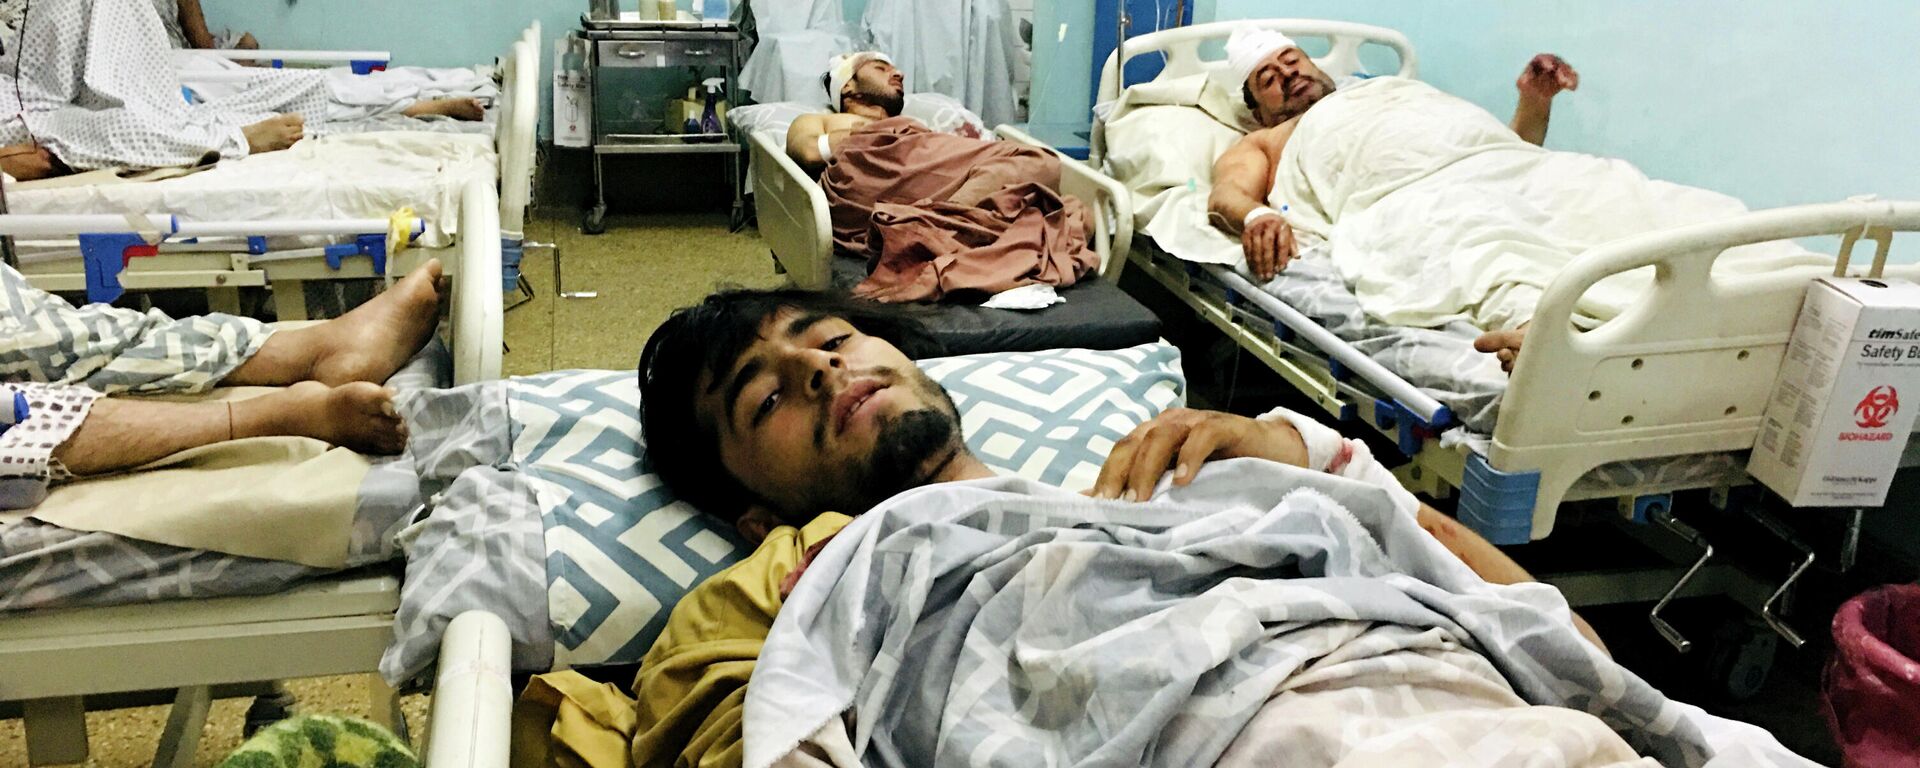 Sužeisti afganai ligoninėje po sprogimų netoli Kabulo oro uosto - Sputnik Lietuva, 1920, 27.08.2021